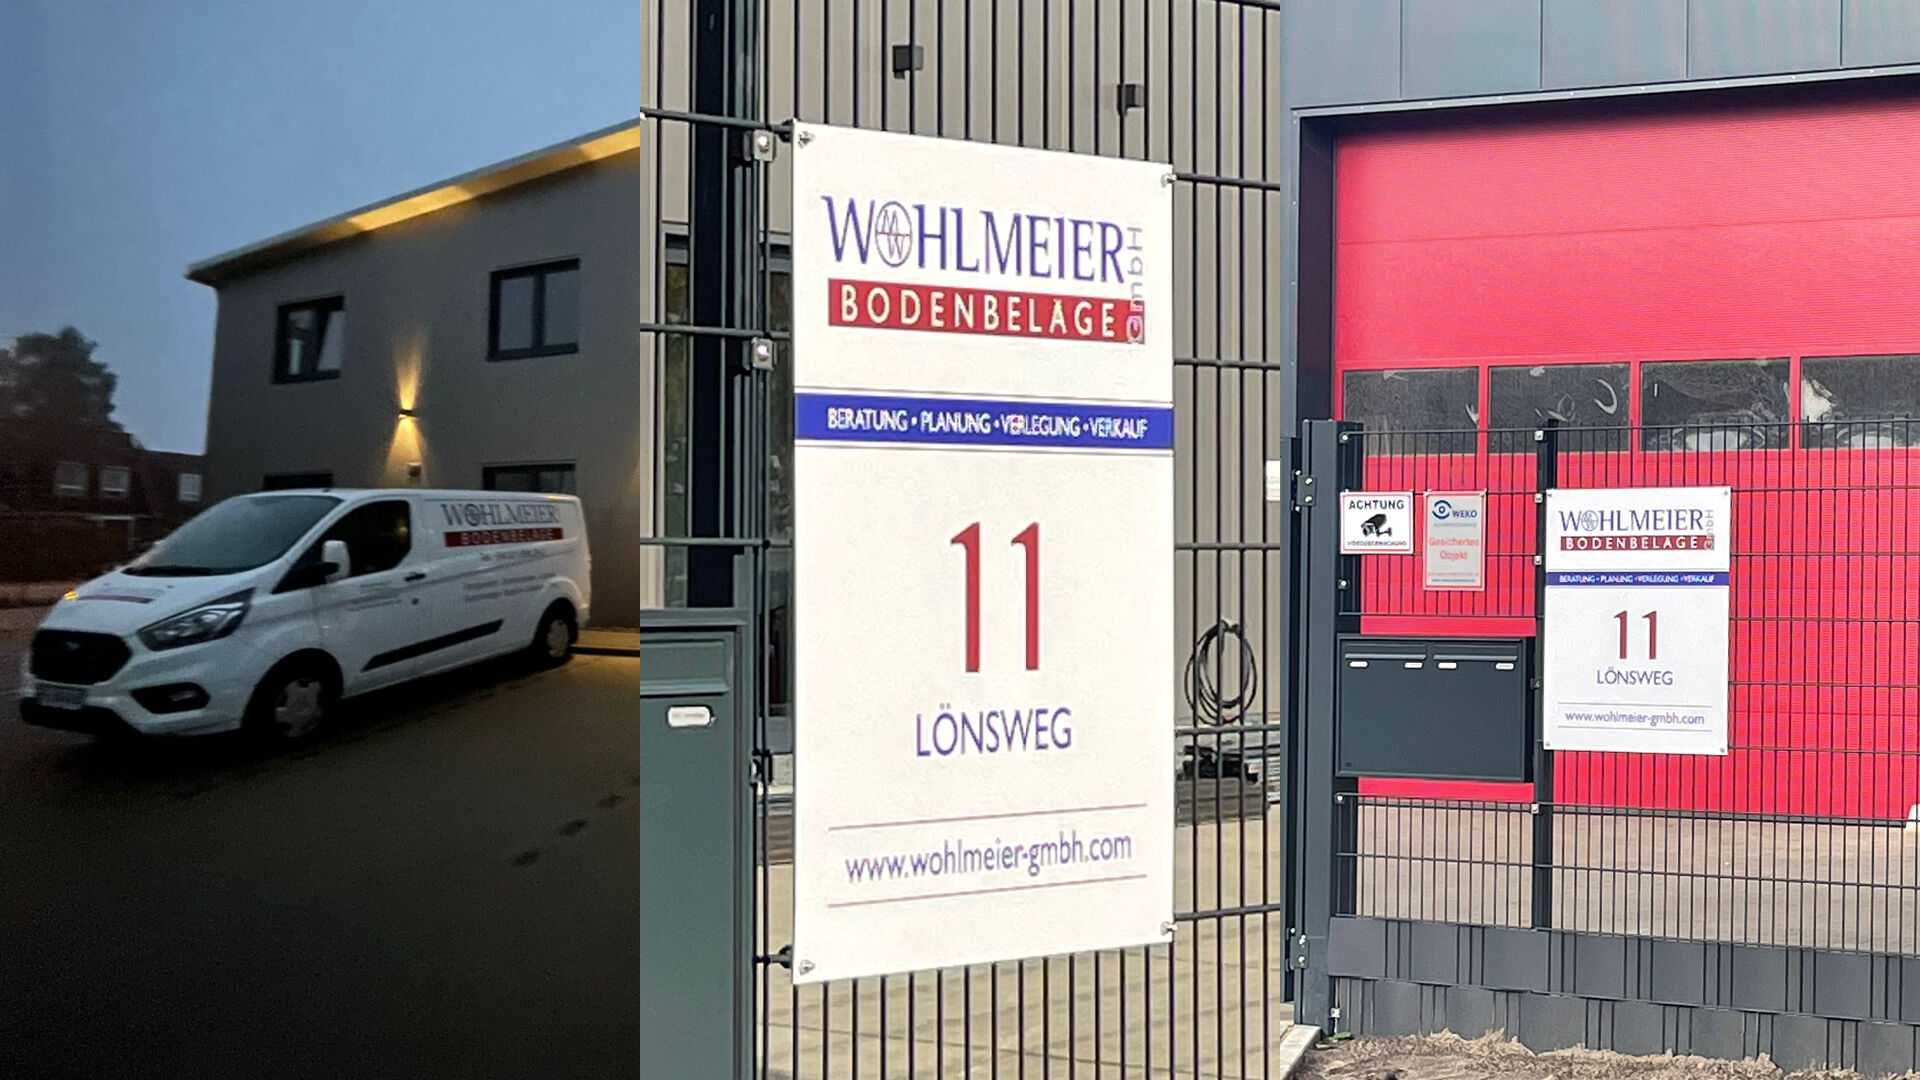 Wohlmeier Bodenbeläge GmbH